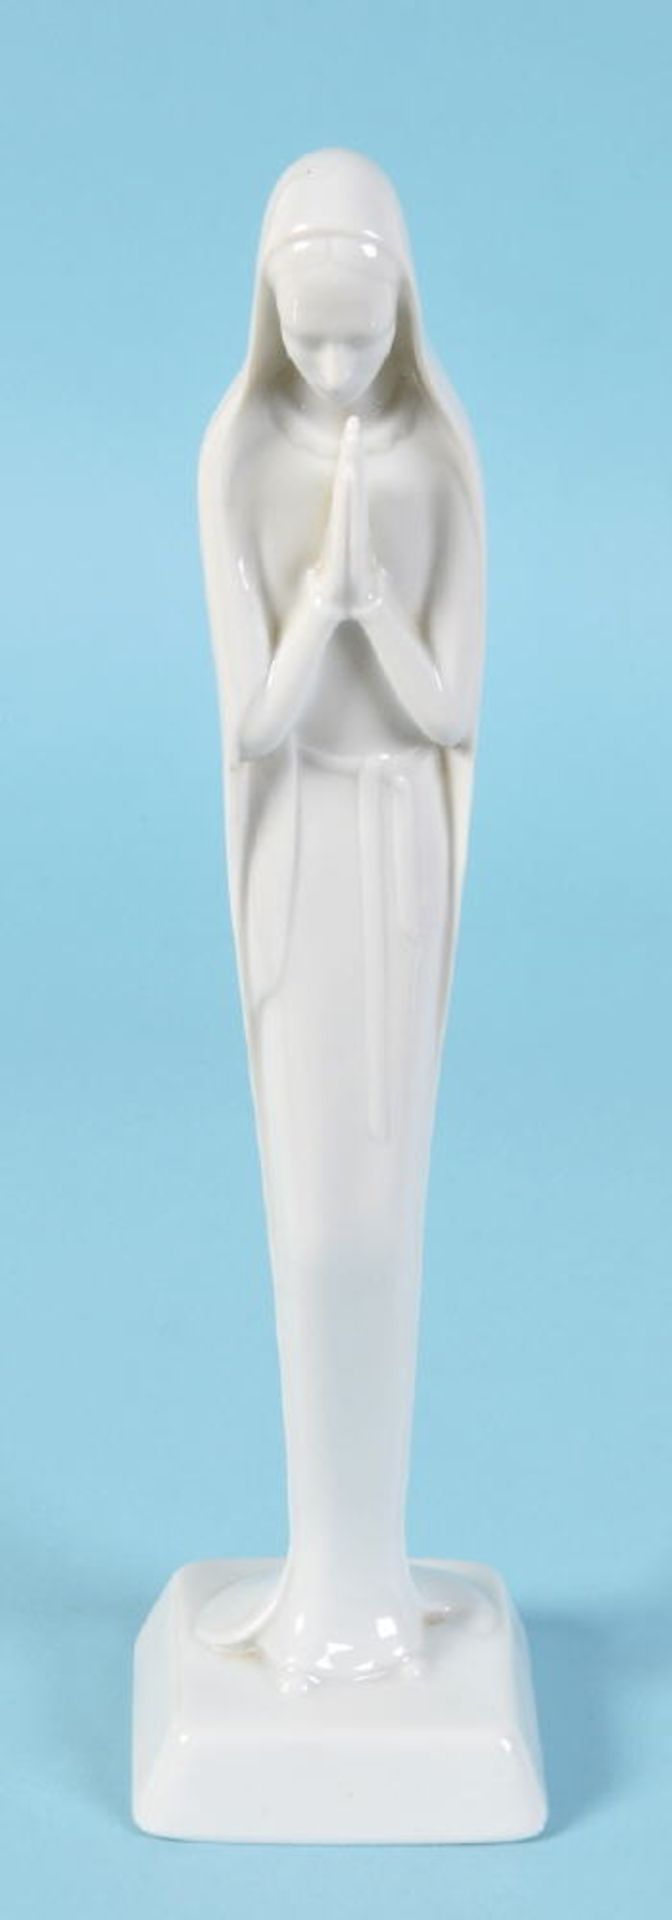 Figur - Madonna "Rosenthal"Porzellan, weiß, auf Sockel, H= 27 cm, Entwurf W. Stöber